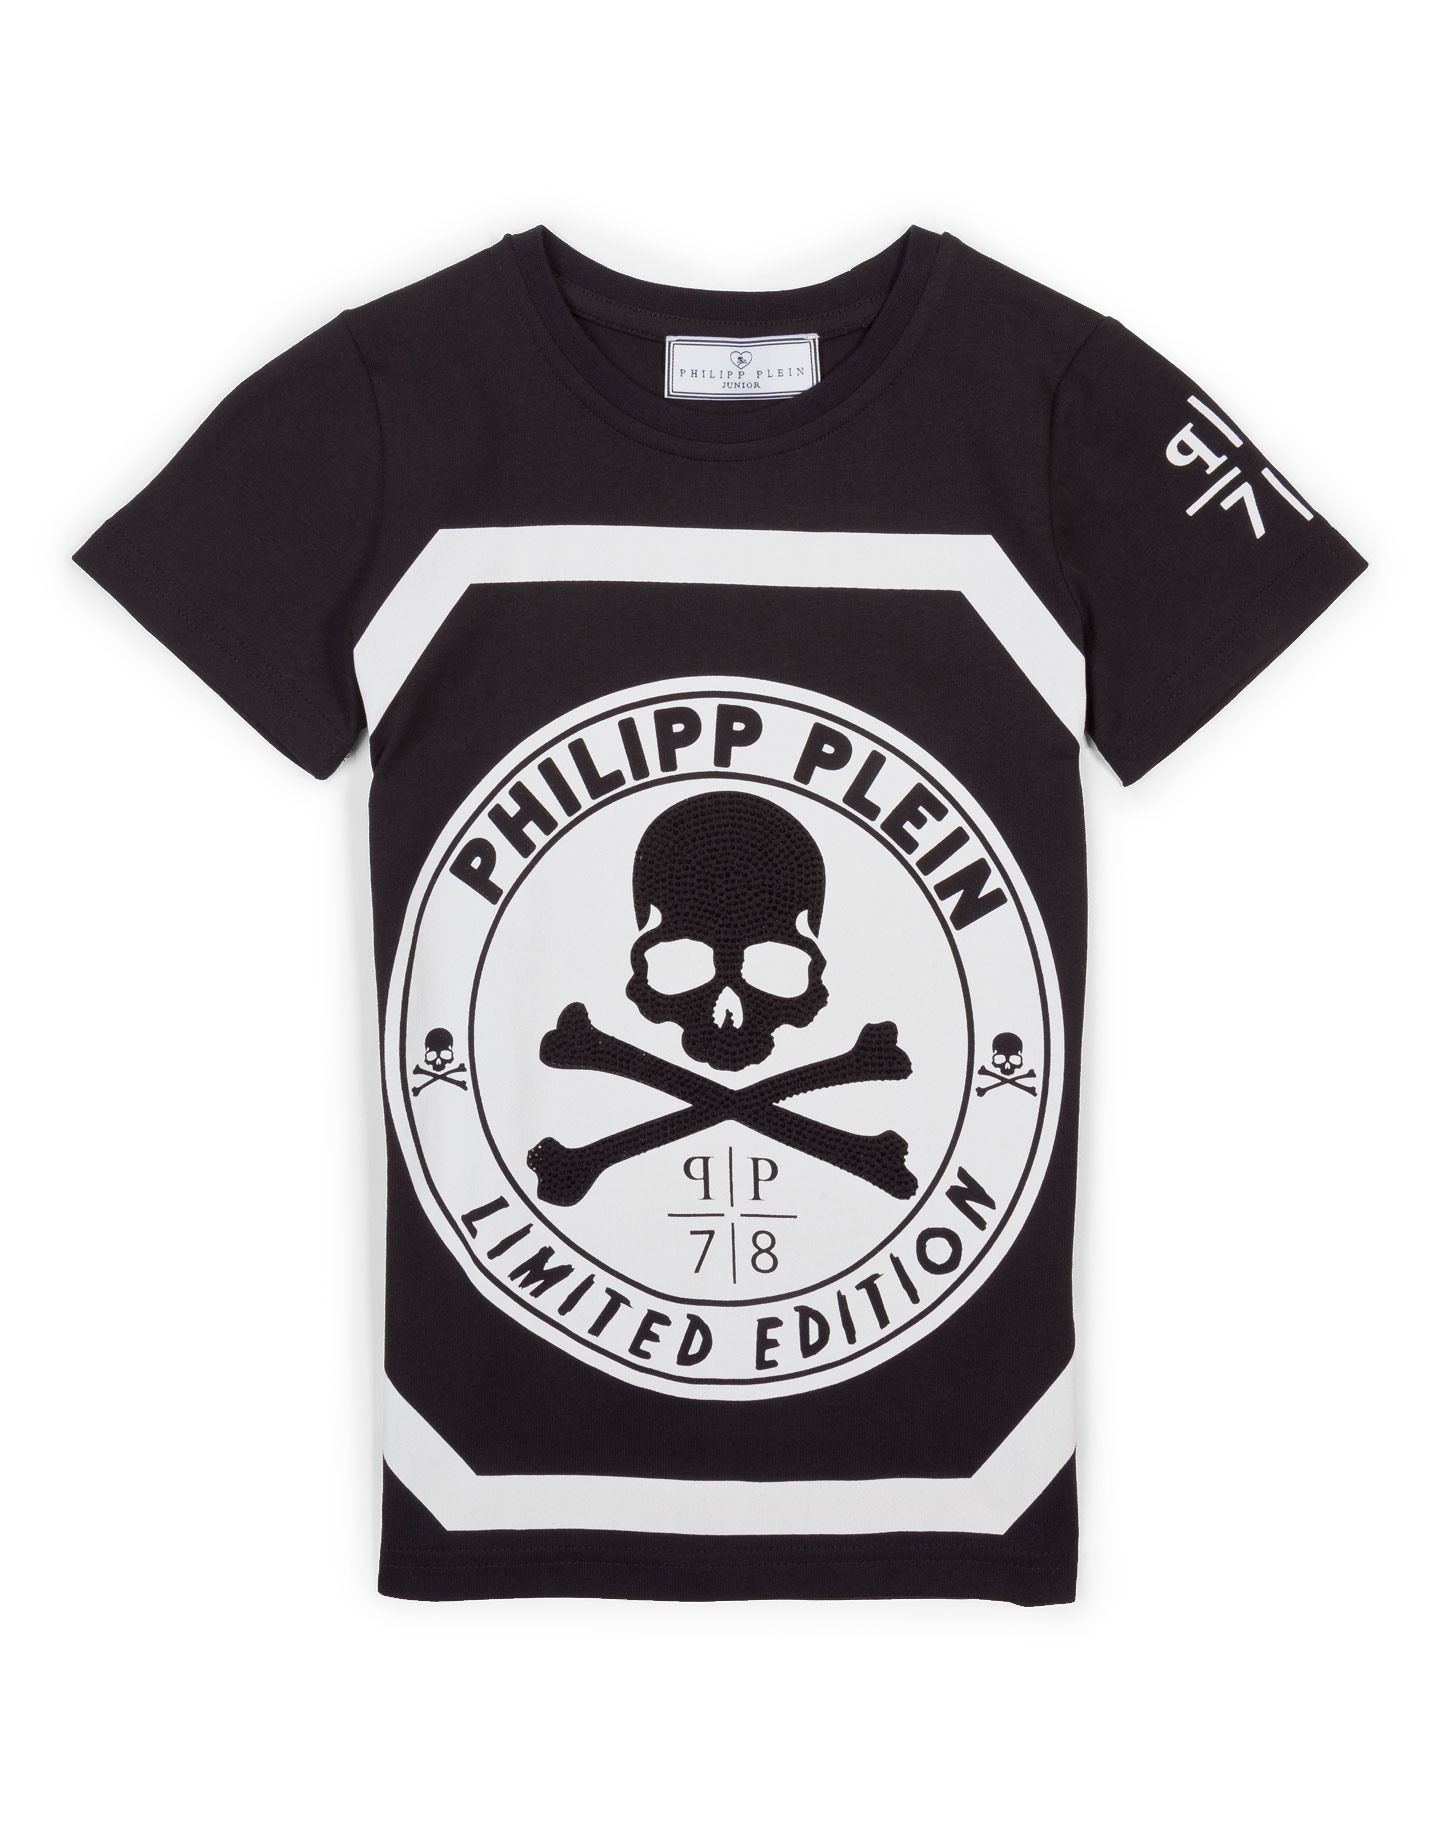 philipp plein est 1978 limited edition switzerland t shirt